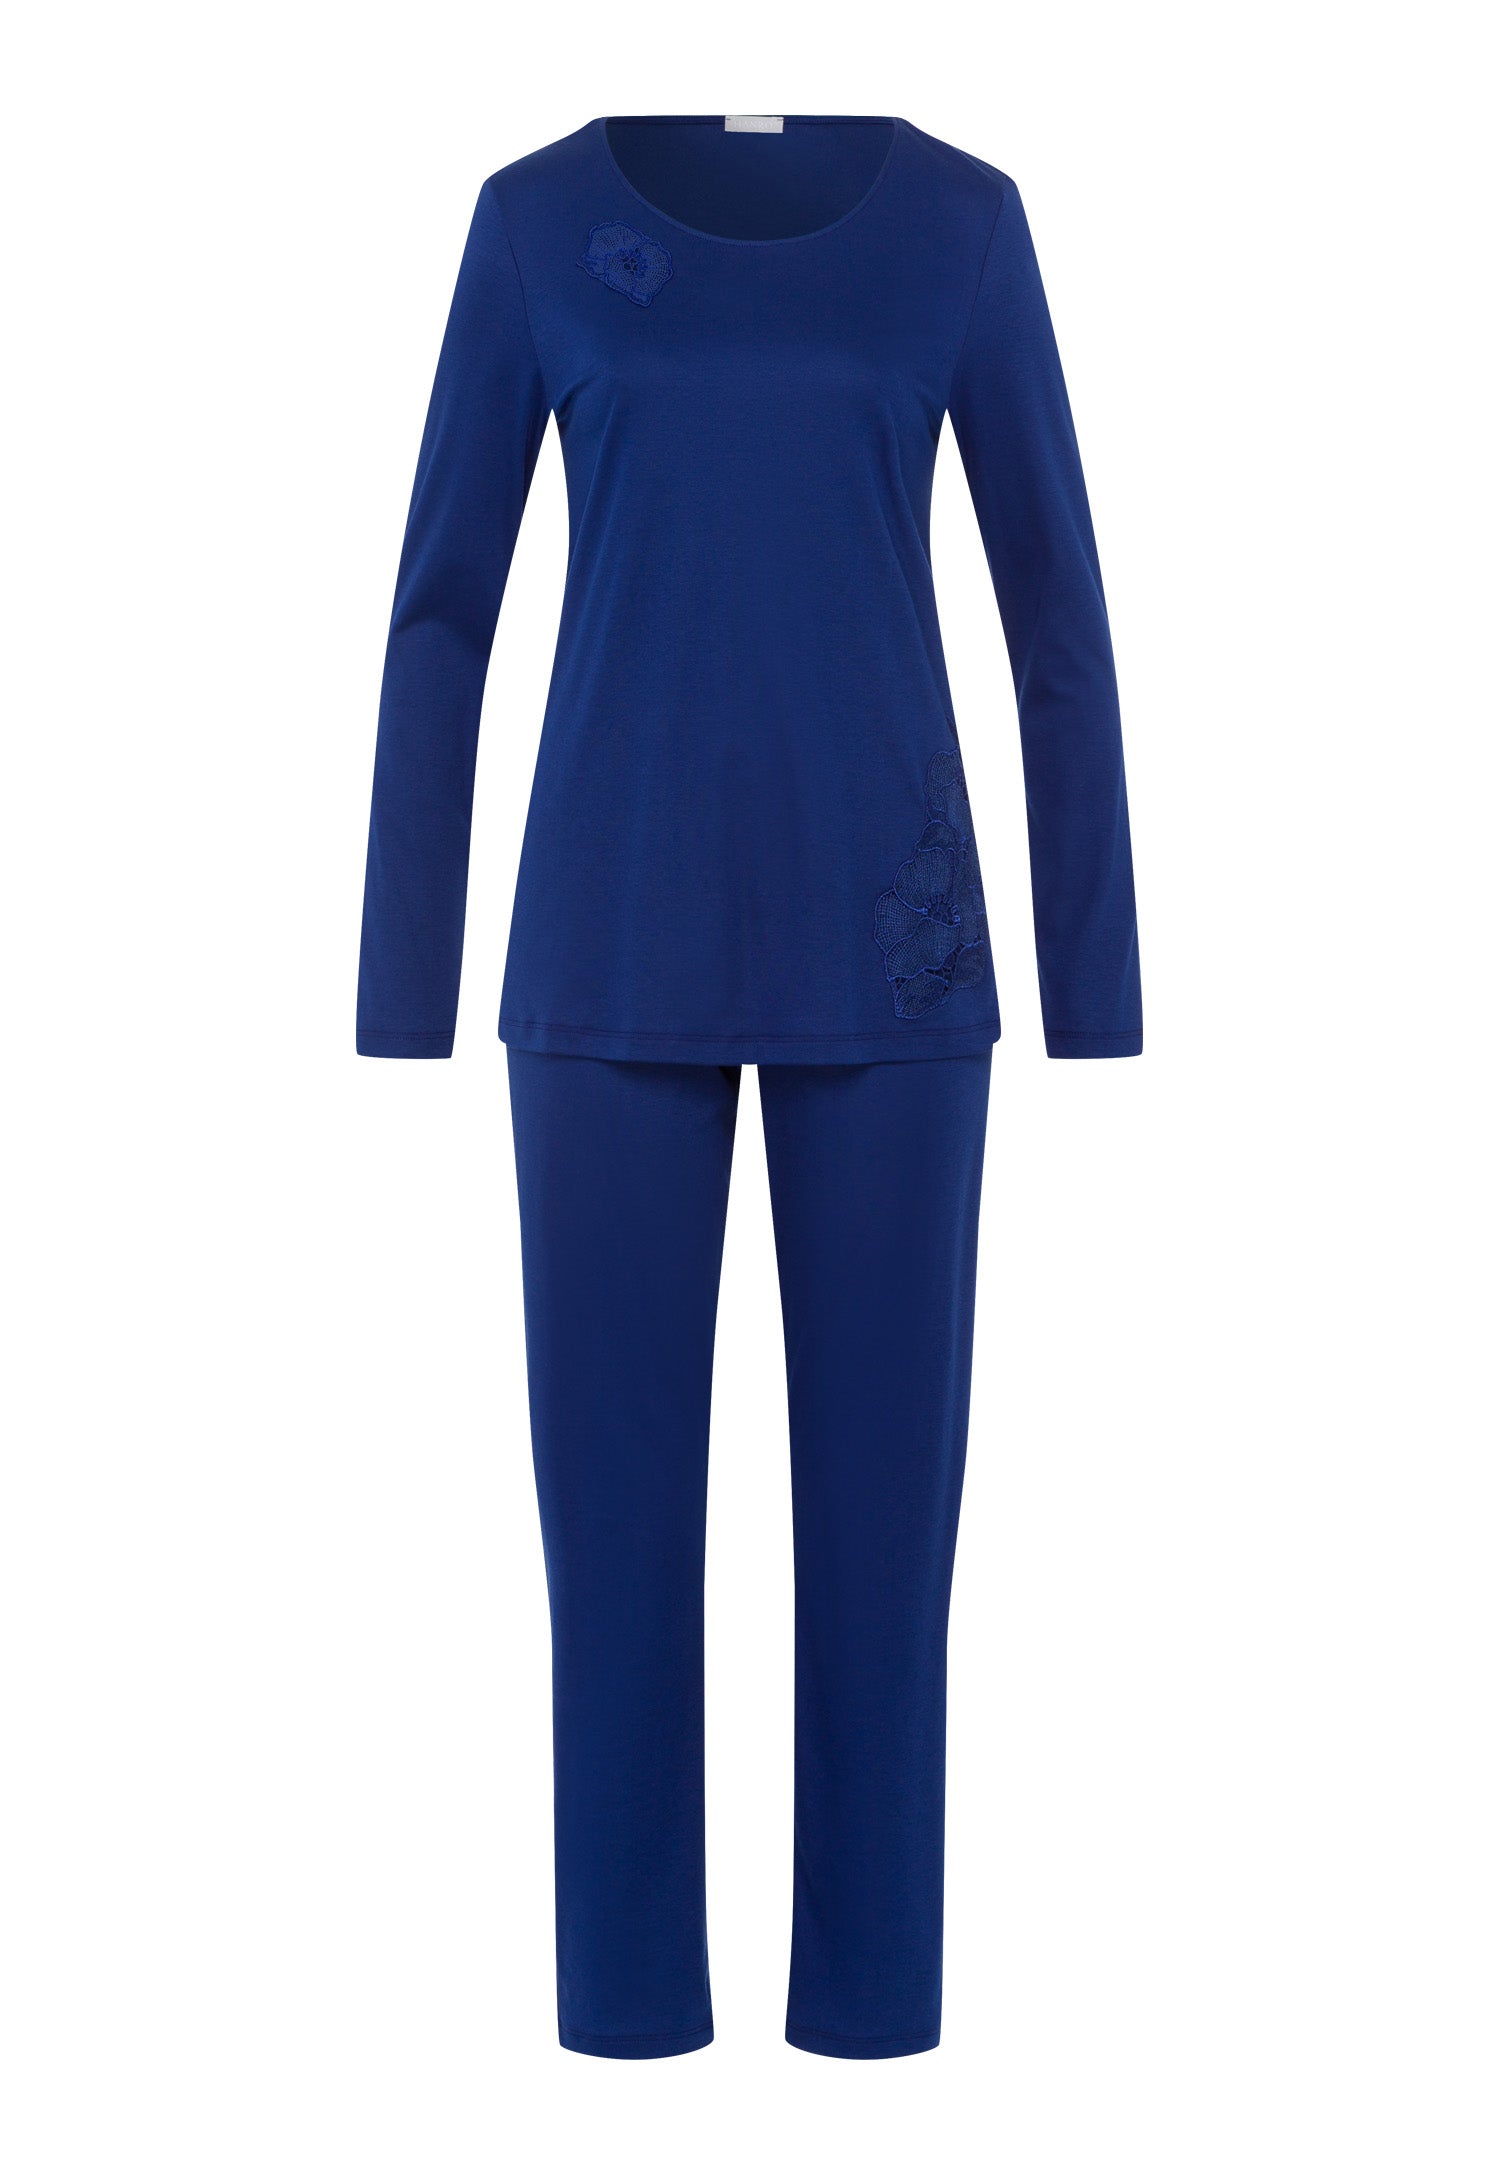 76107 Paola Long Sleeve Pajama Set - 1662 Space Blue